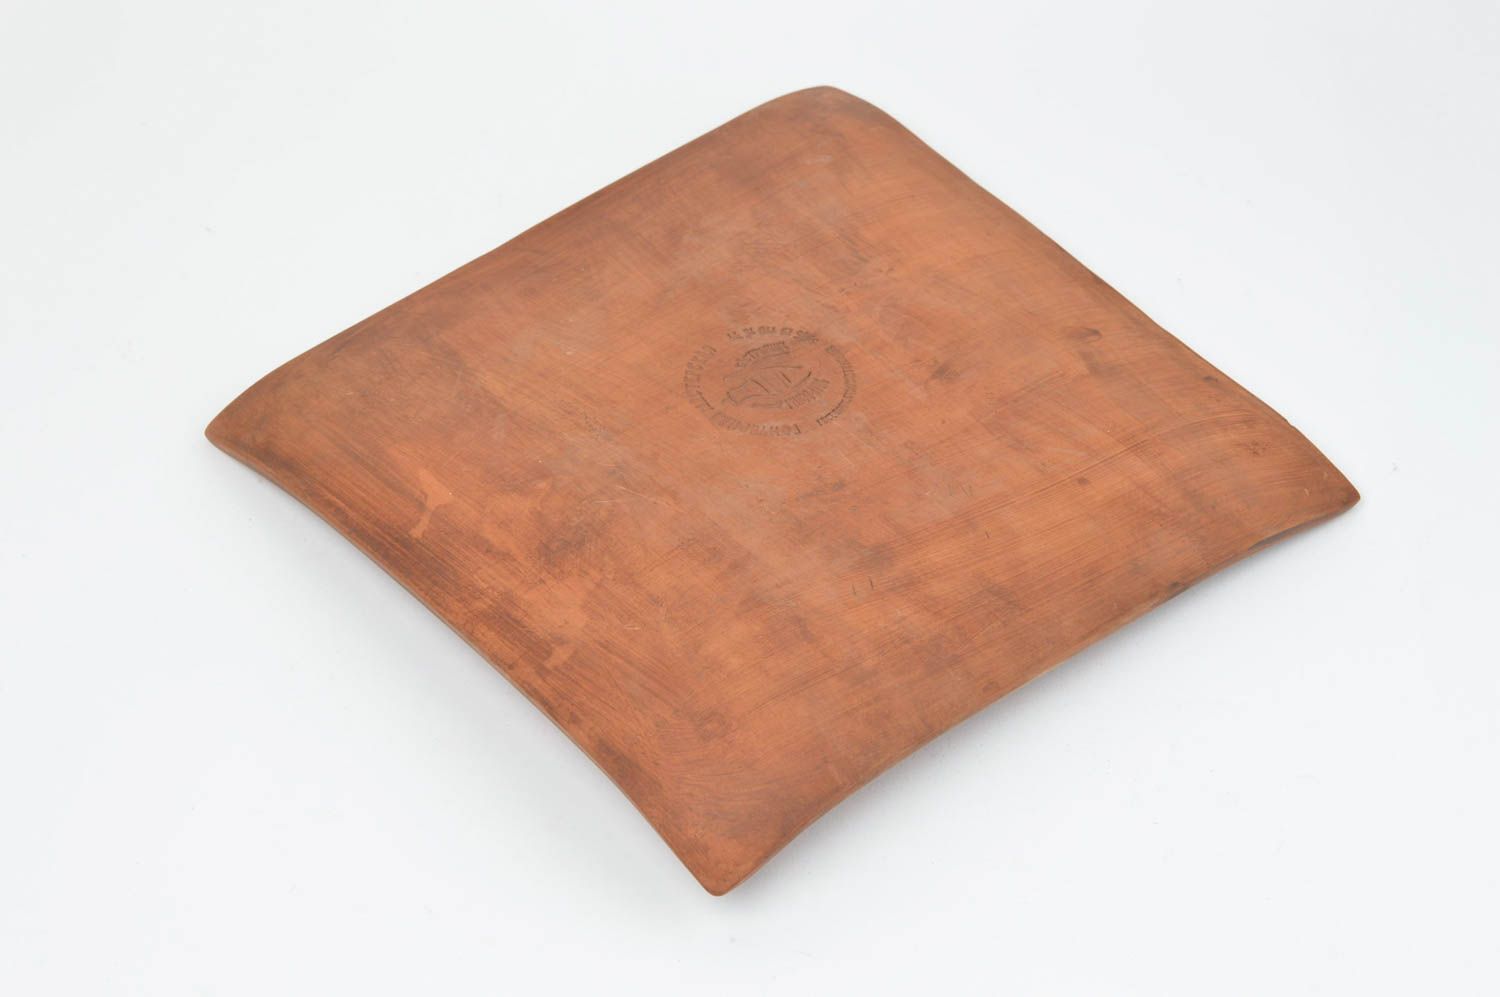 Assiette plate carrée en terre cuite marron avec motif en relief faite main photo 4